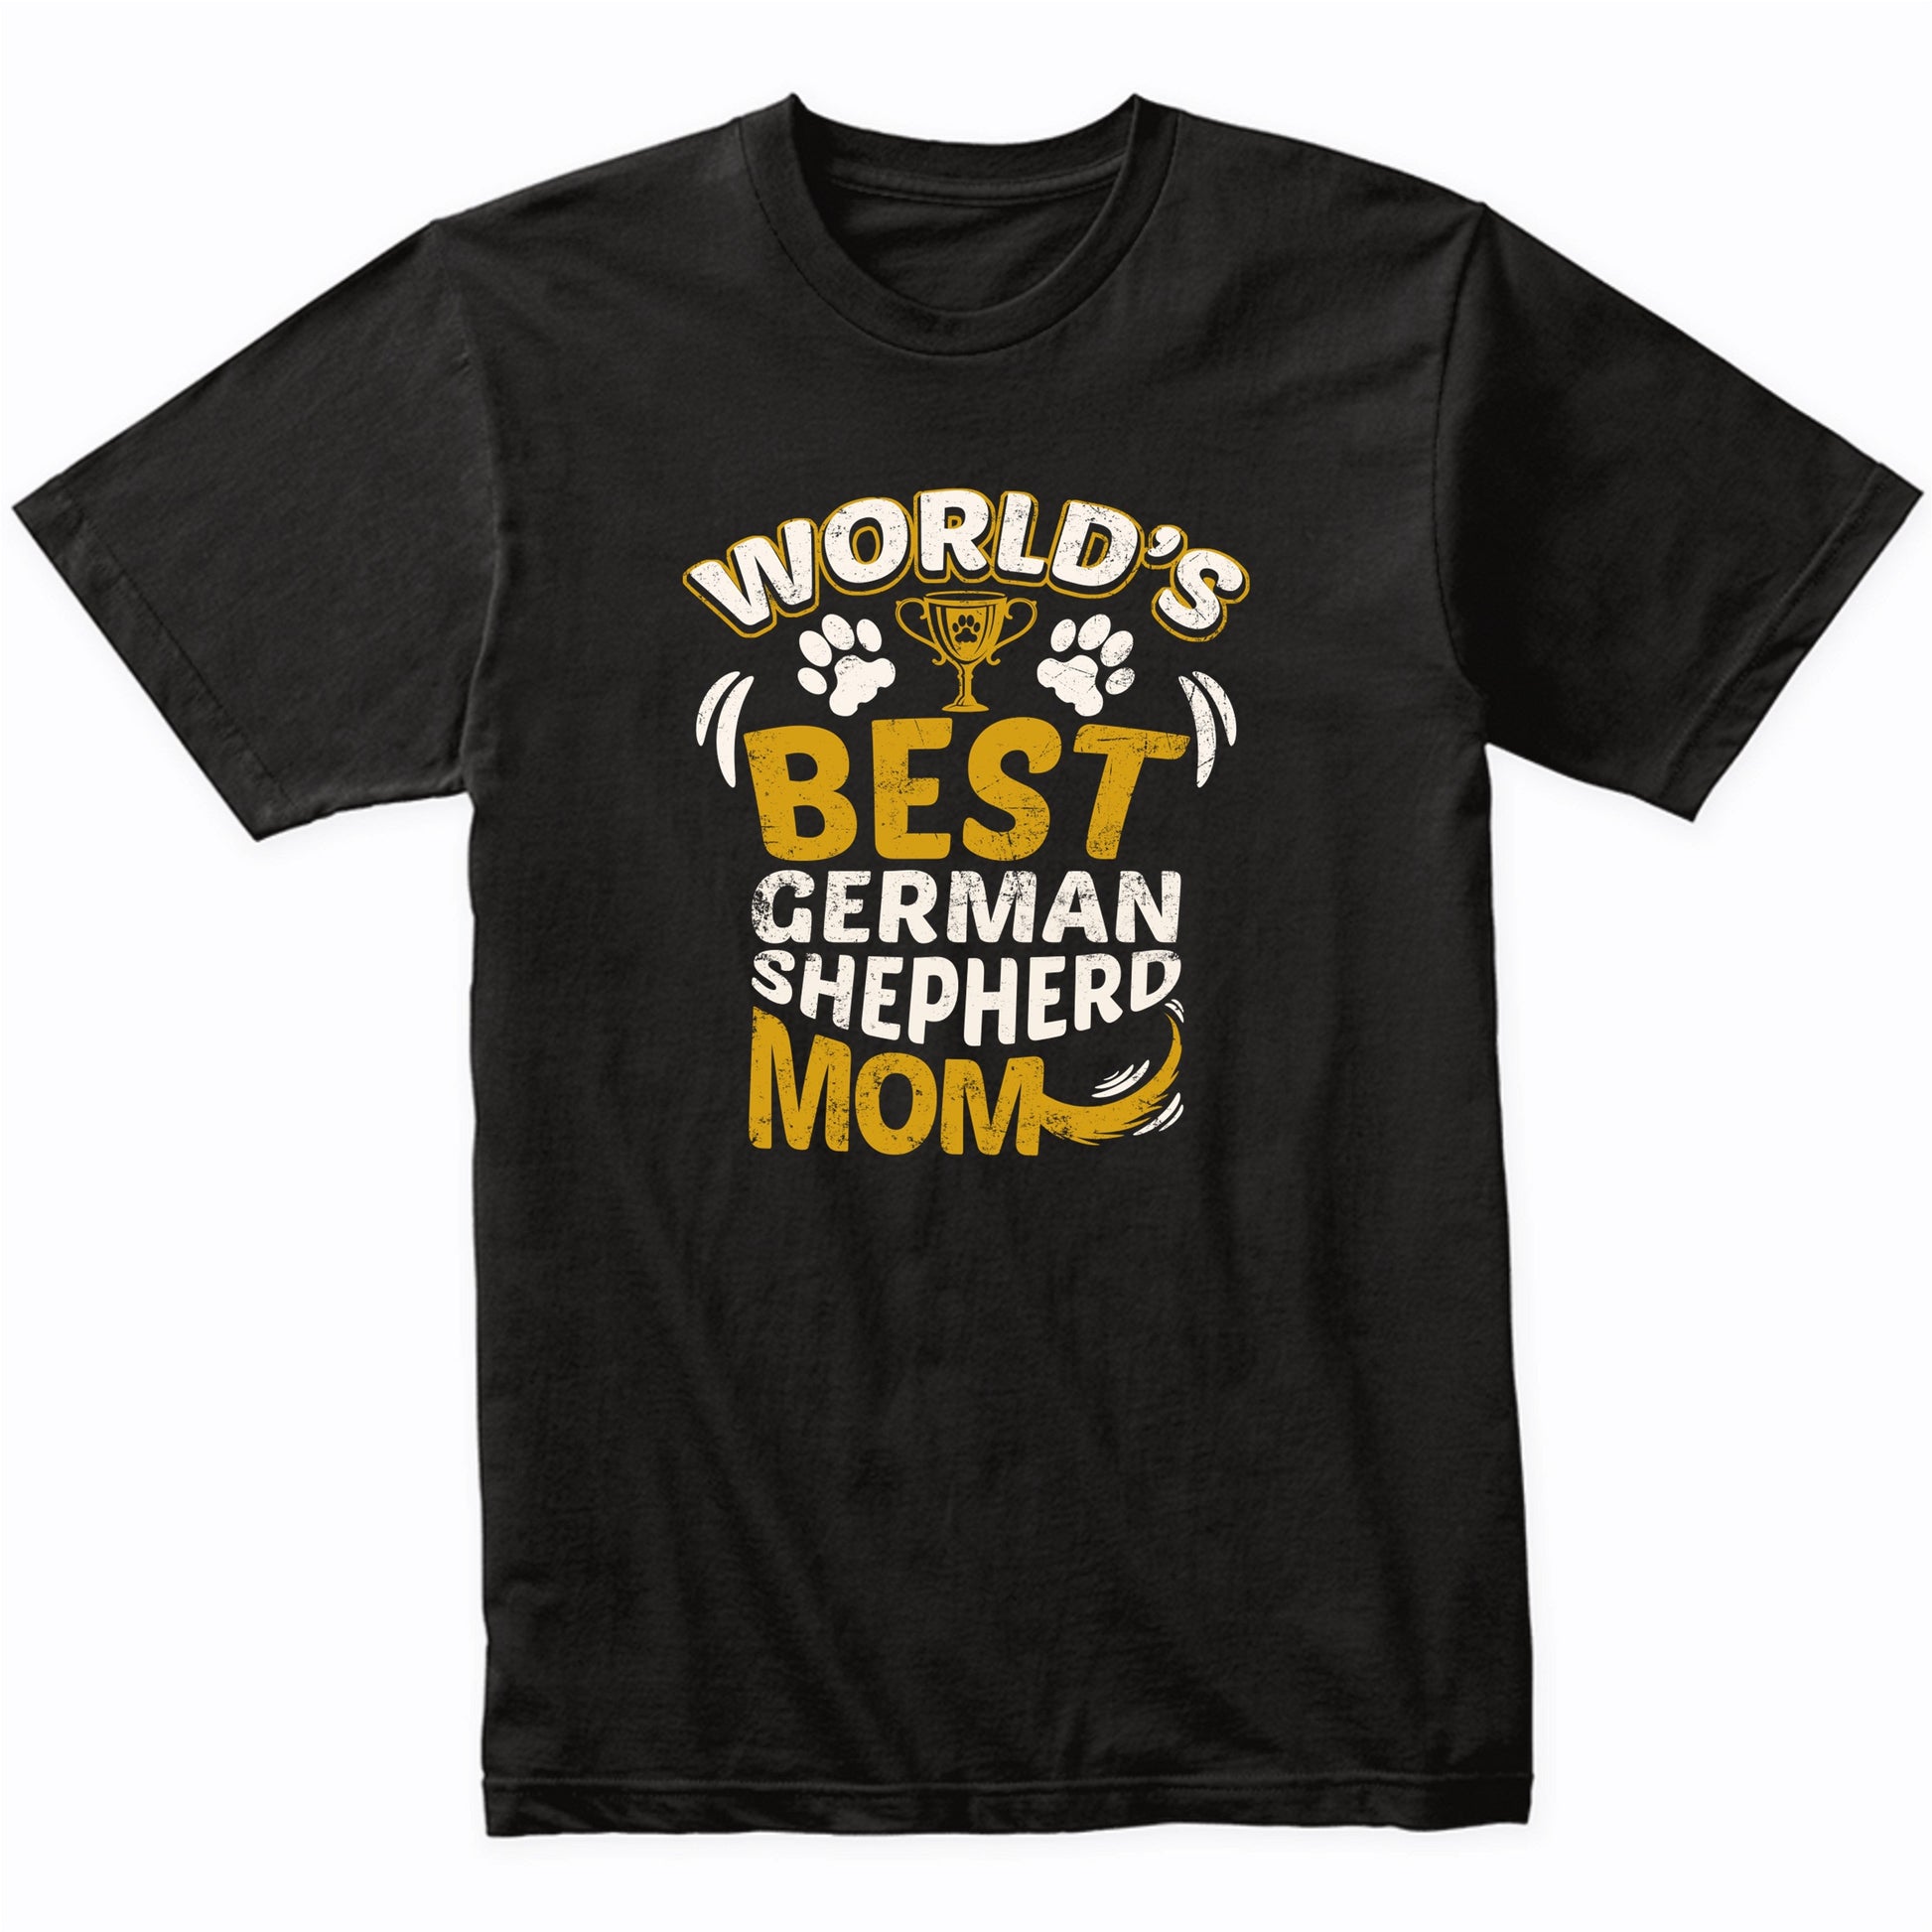 World's Best German Shepherd Mom Graphic T-Shirt